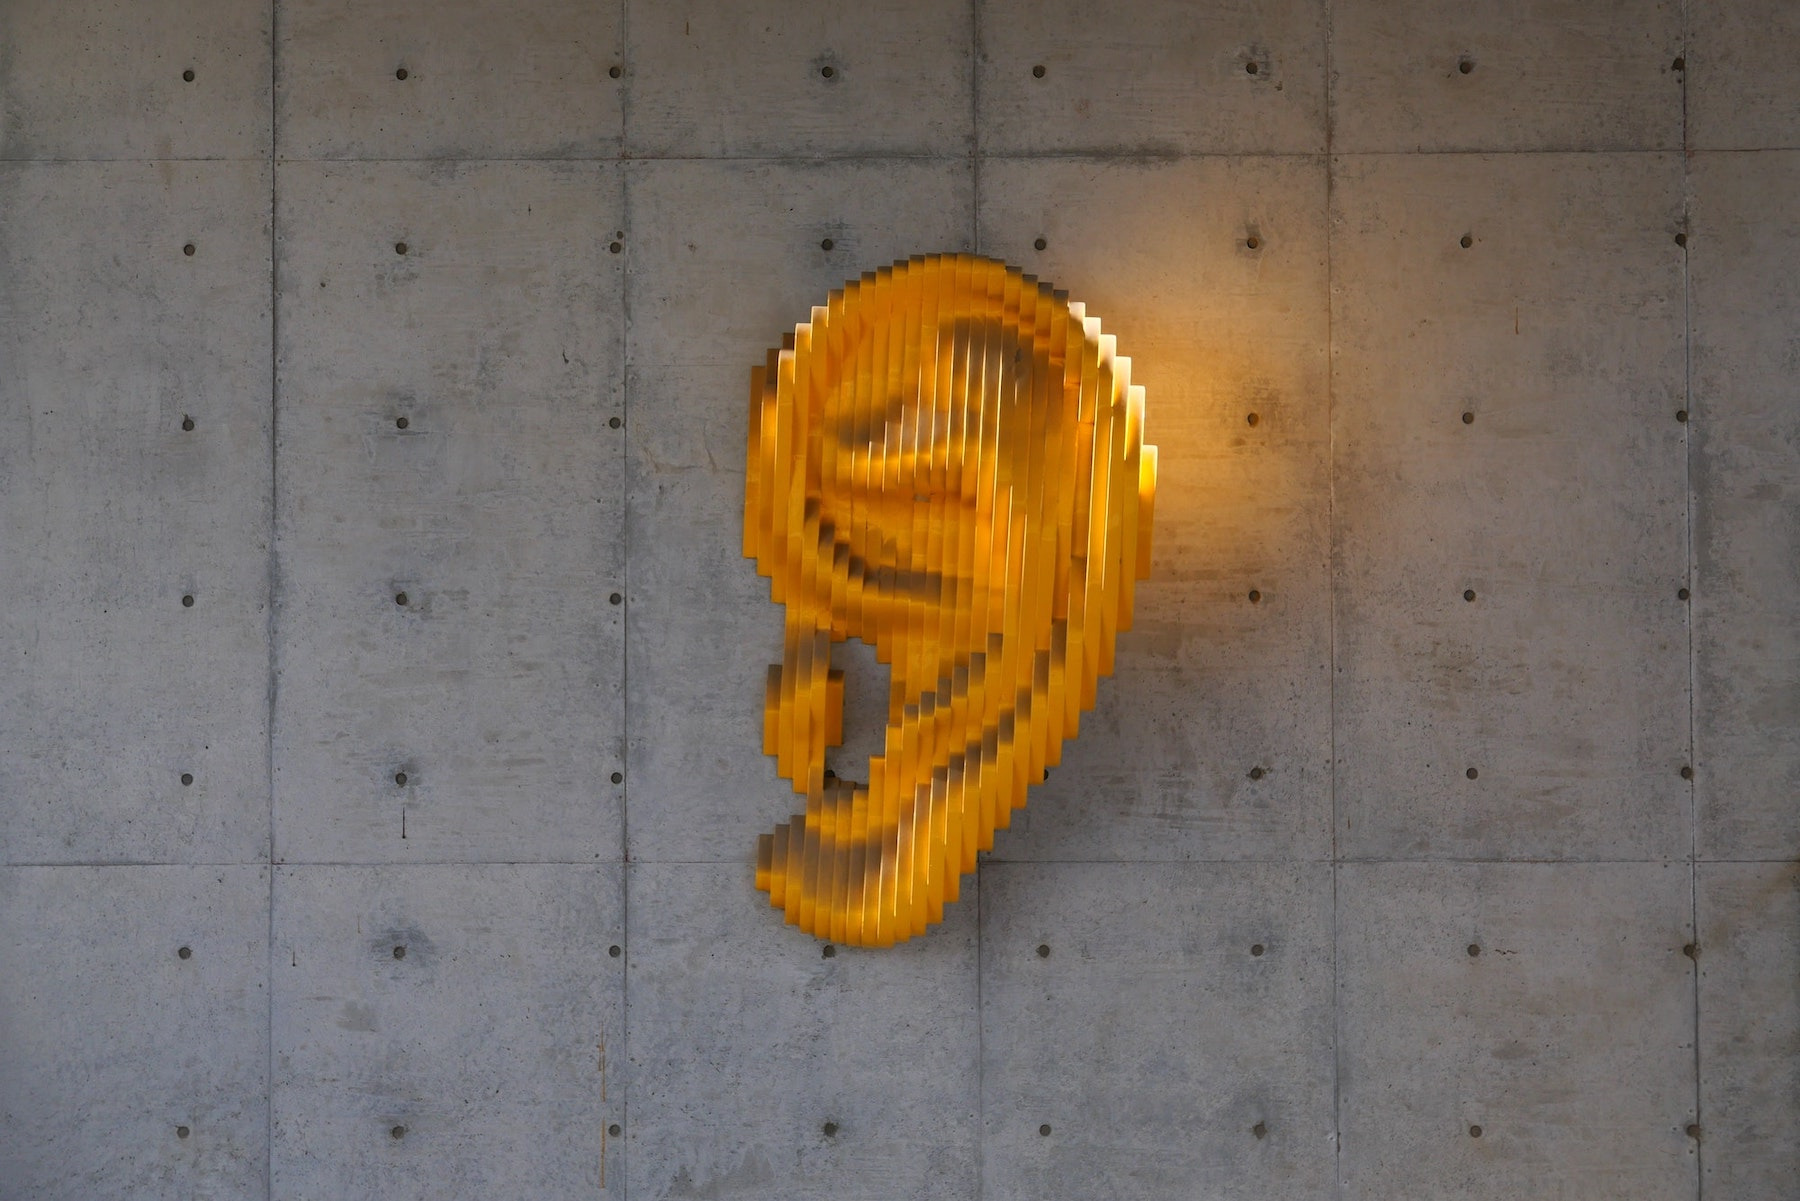 Ein Ohr aus Gold hängt als Kunstobjekt an einer Wand